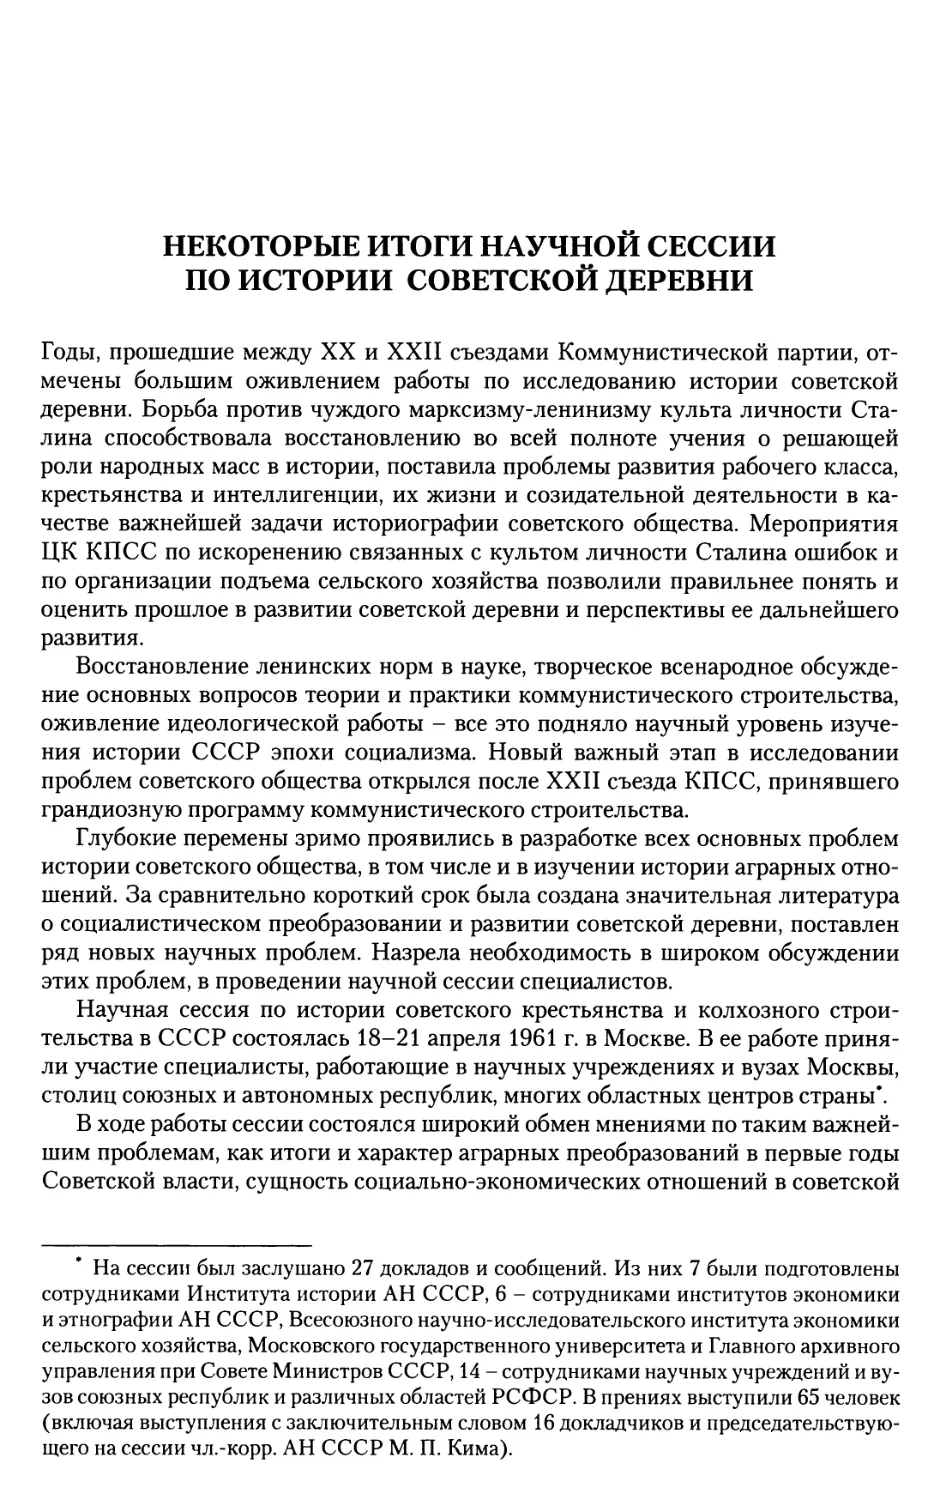 Некоторые итоги научной сессии по истории советской деревни